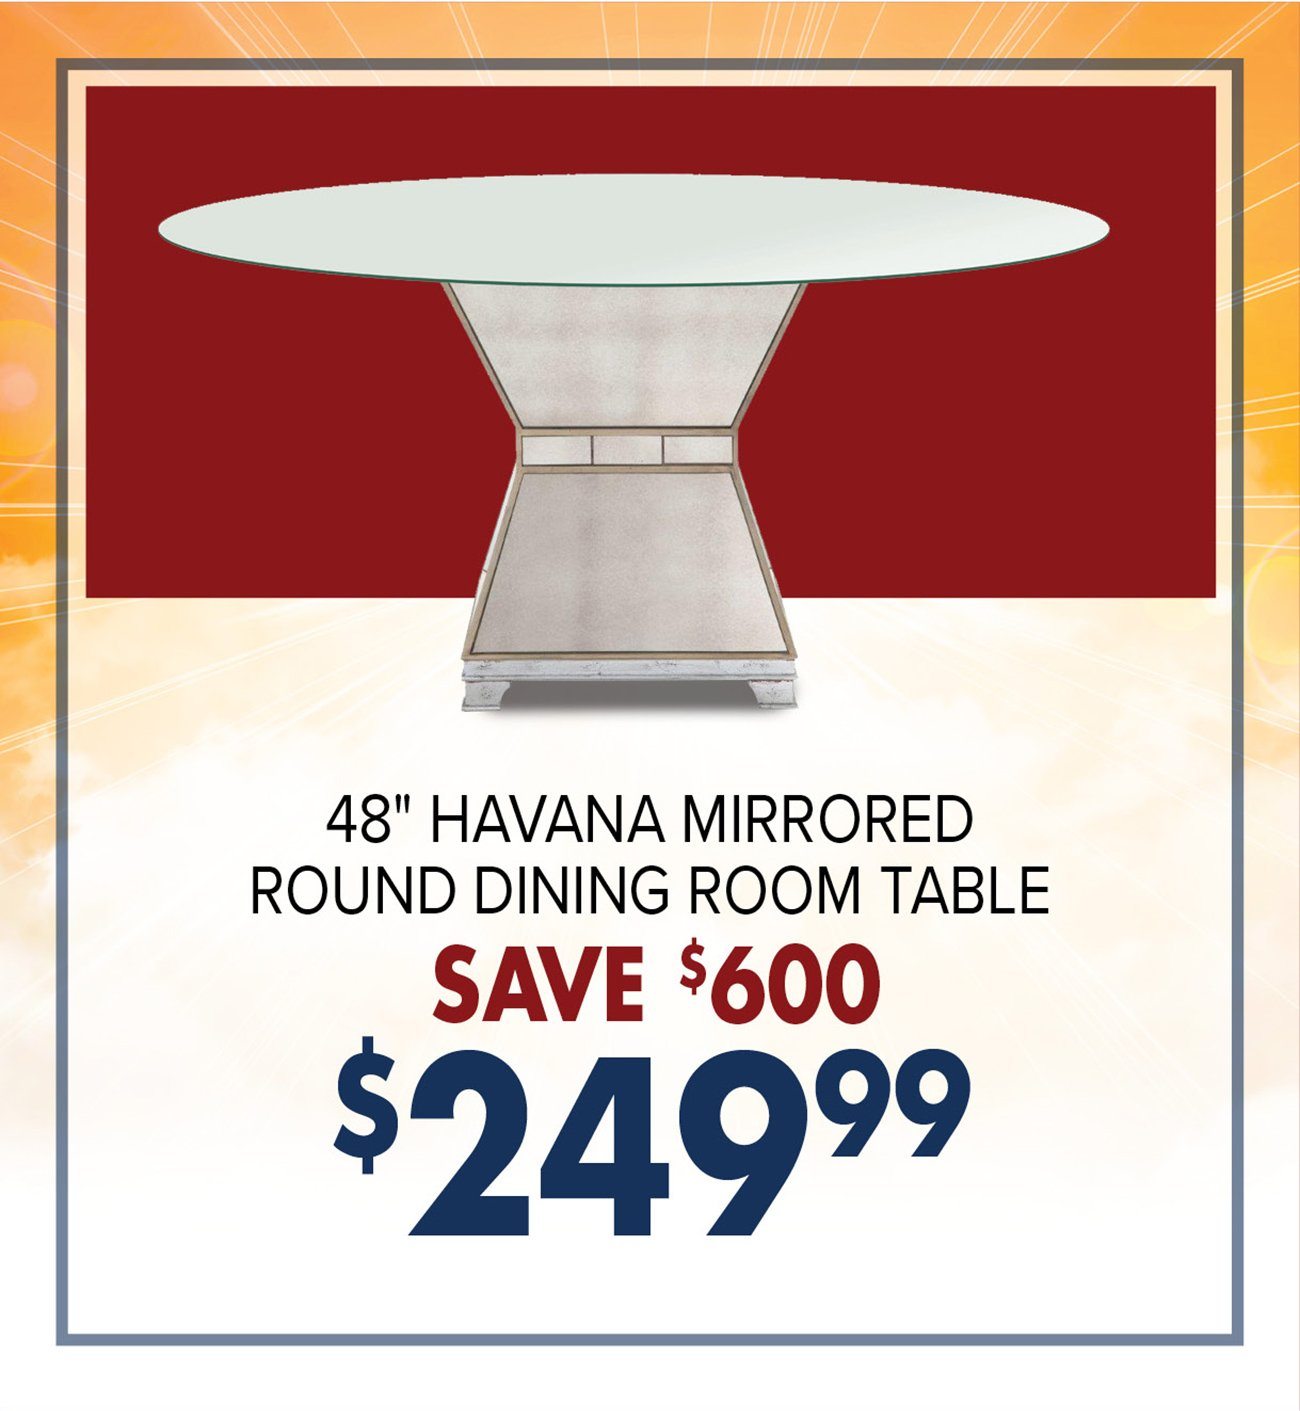 Havana-mirrored-dining-room-table